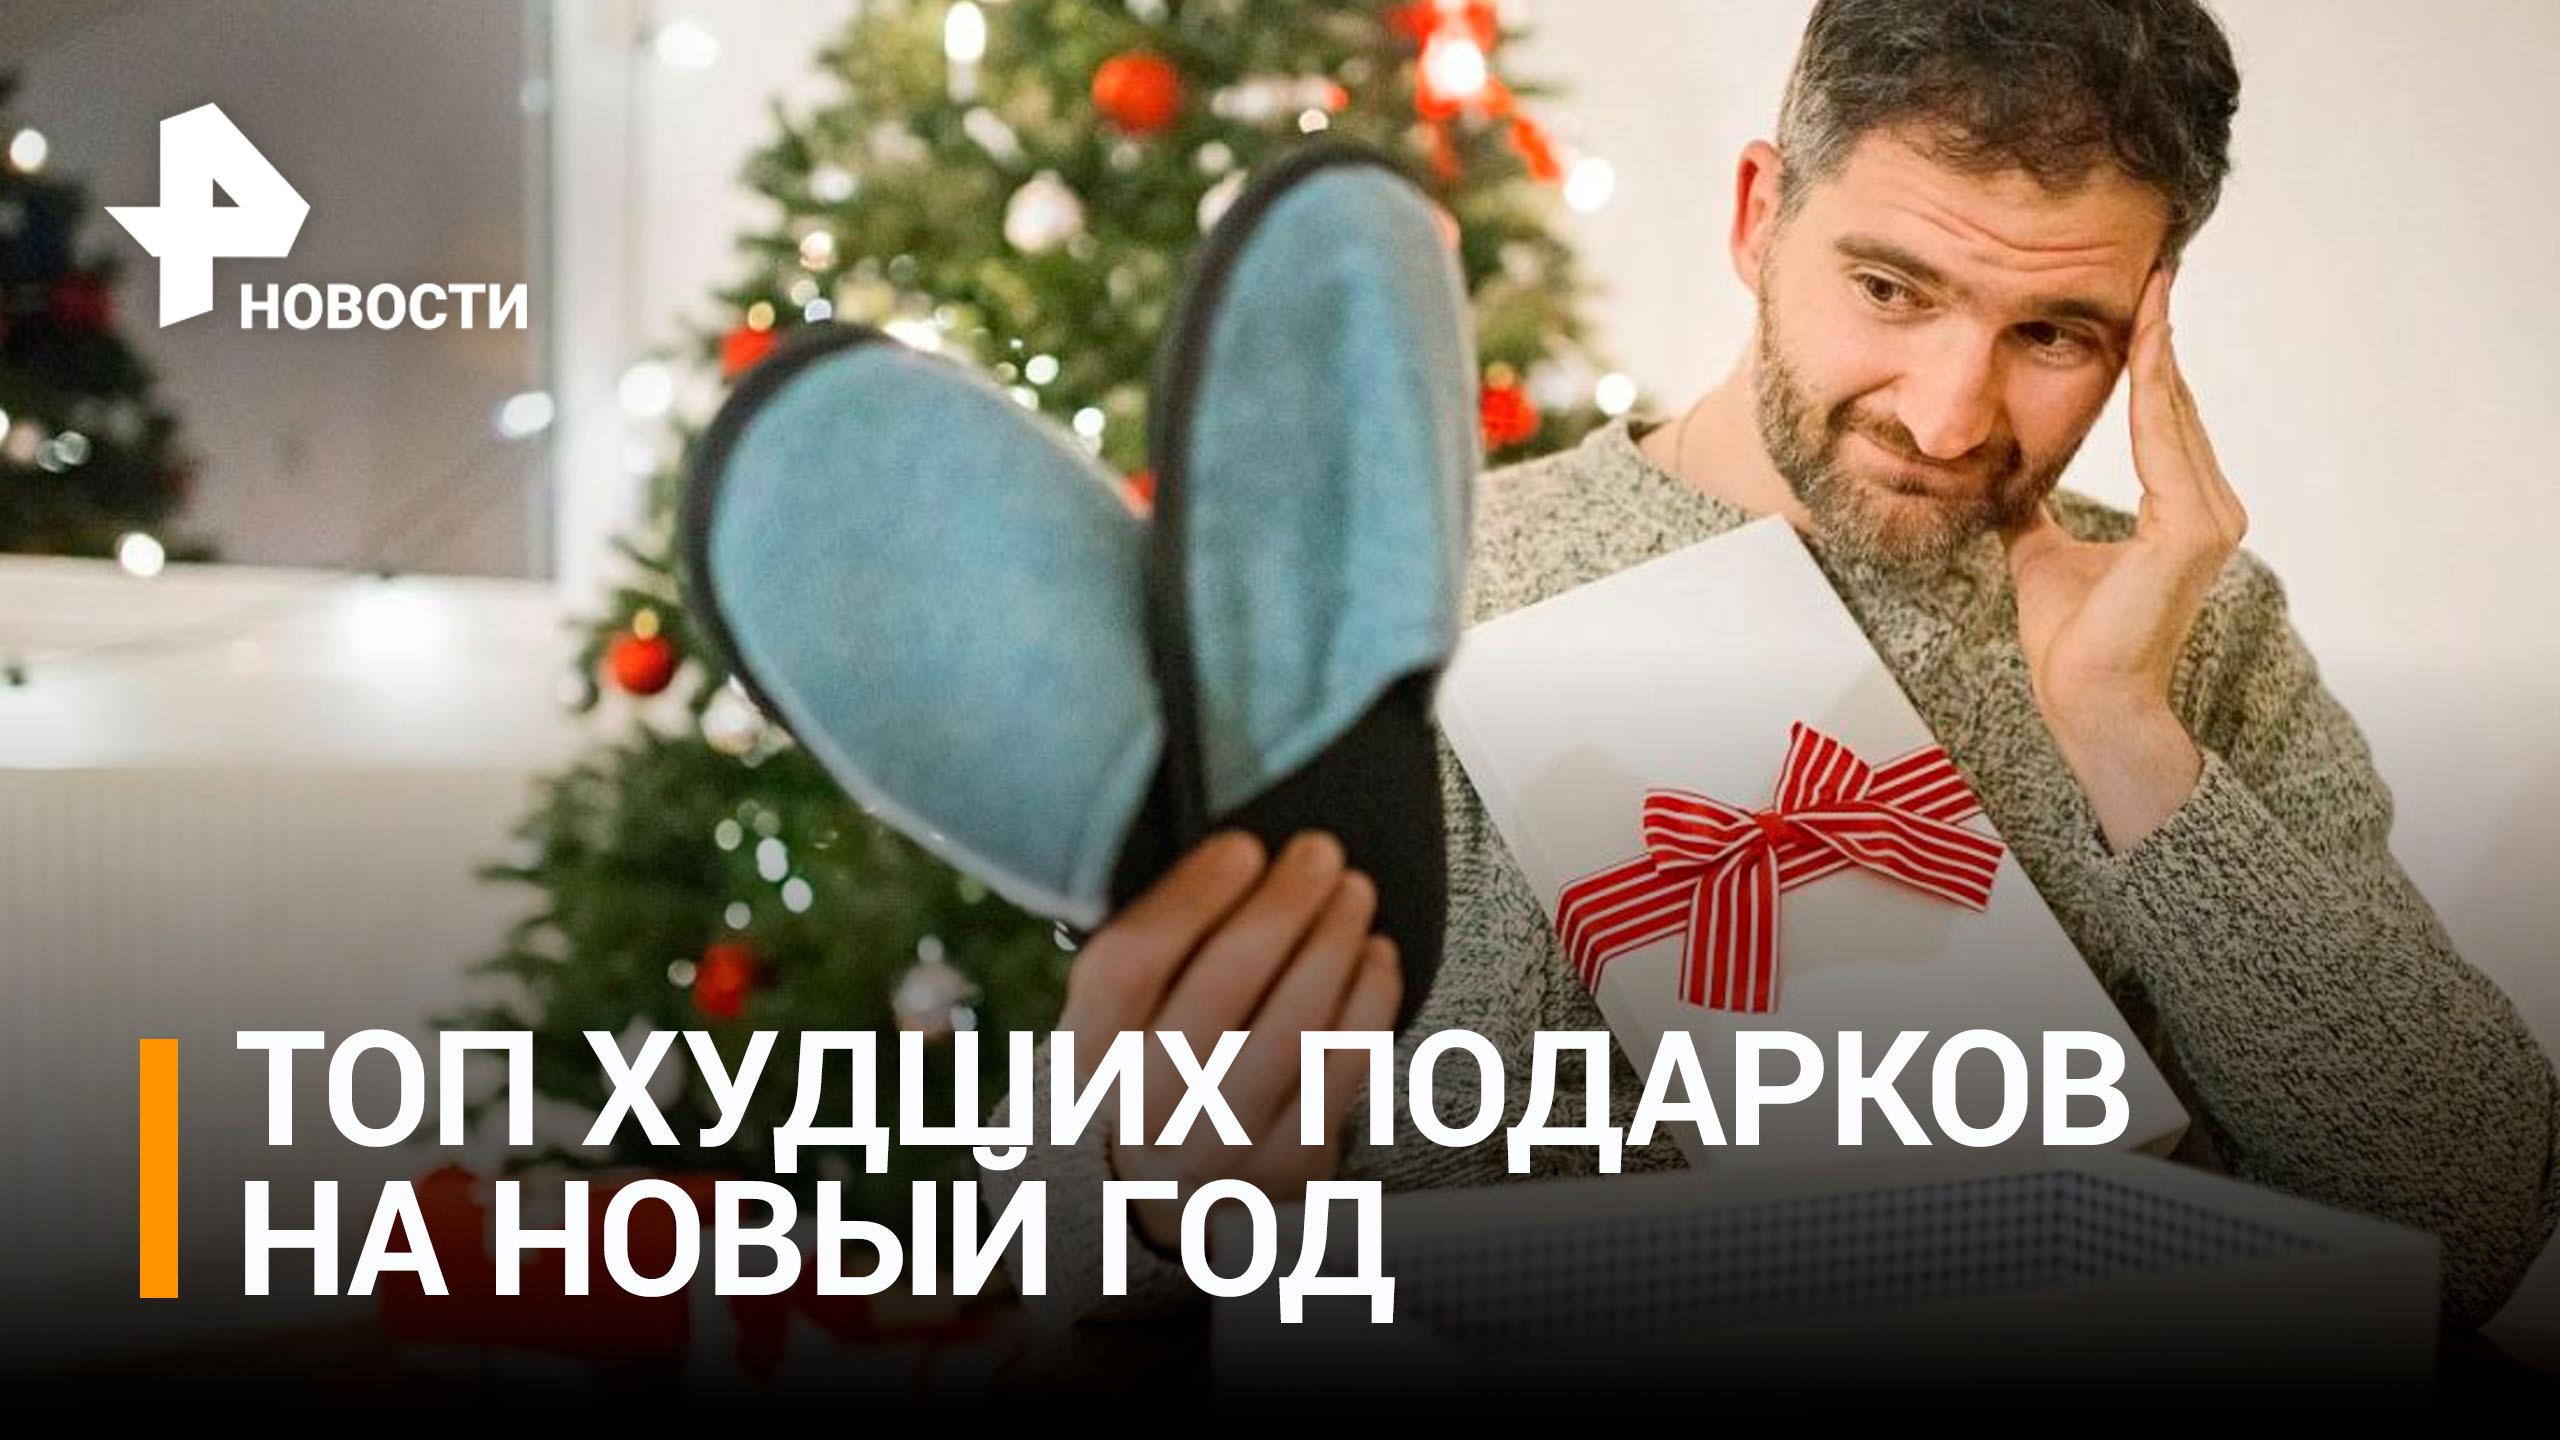 Как угробить новогоднее настроение: россияне рассказали о самых ненужных новогодних подарках / РЕН